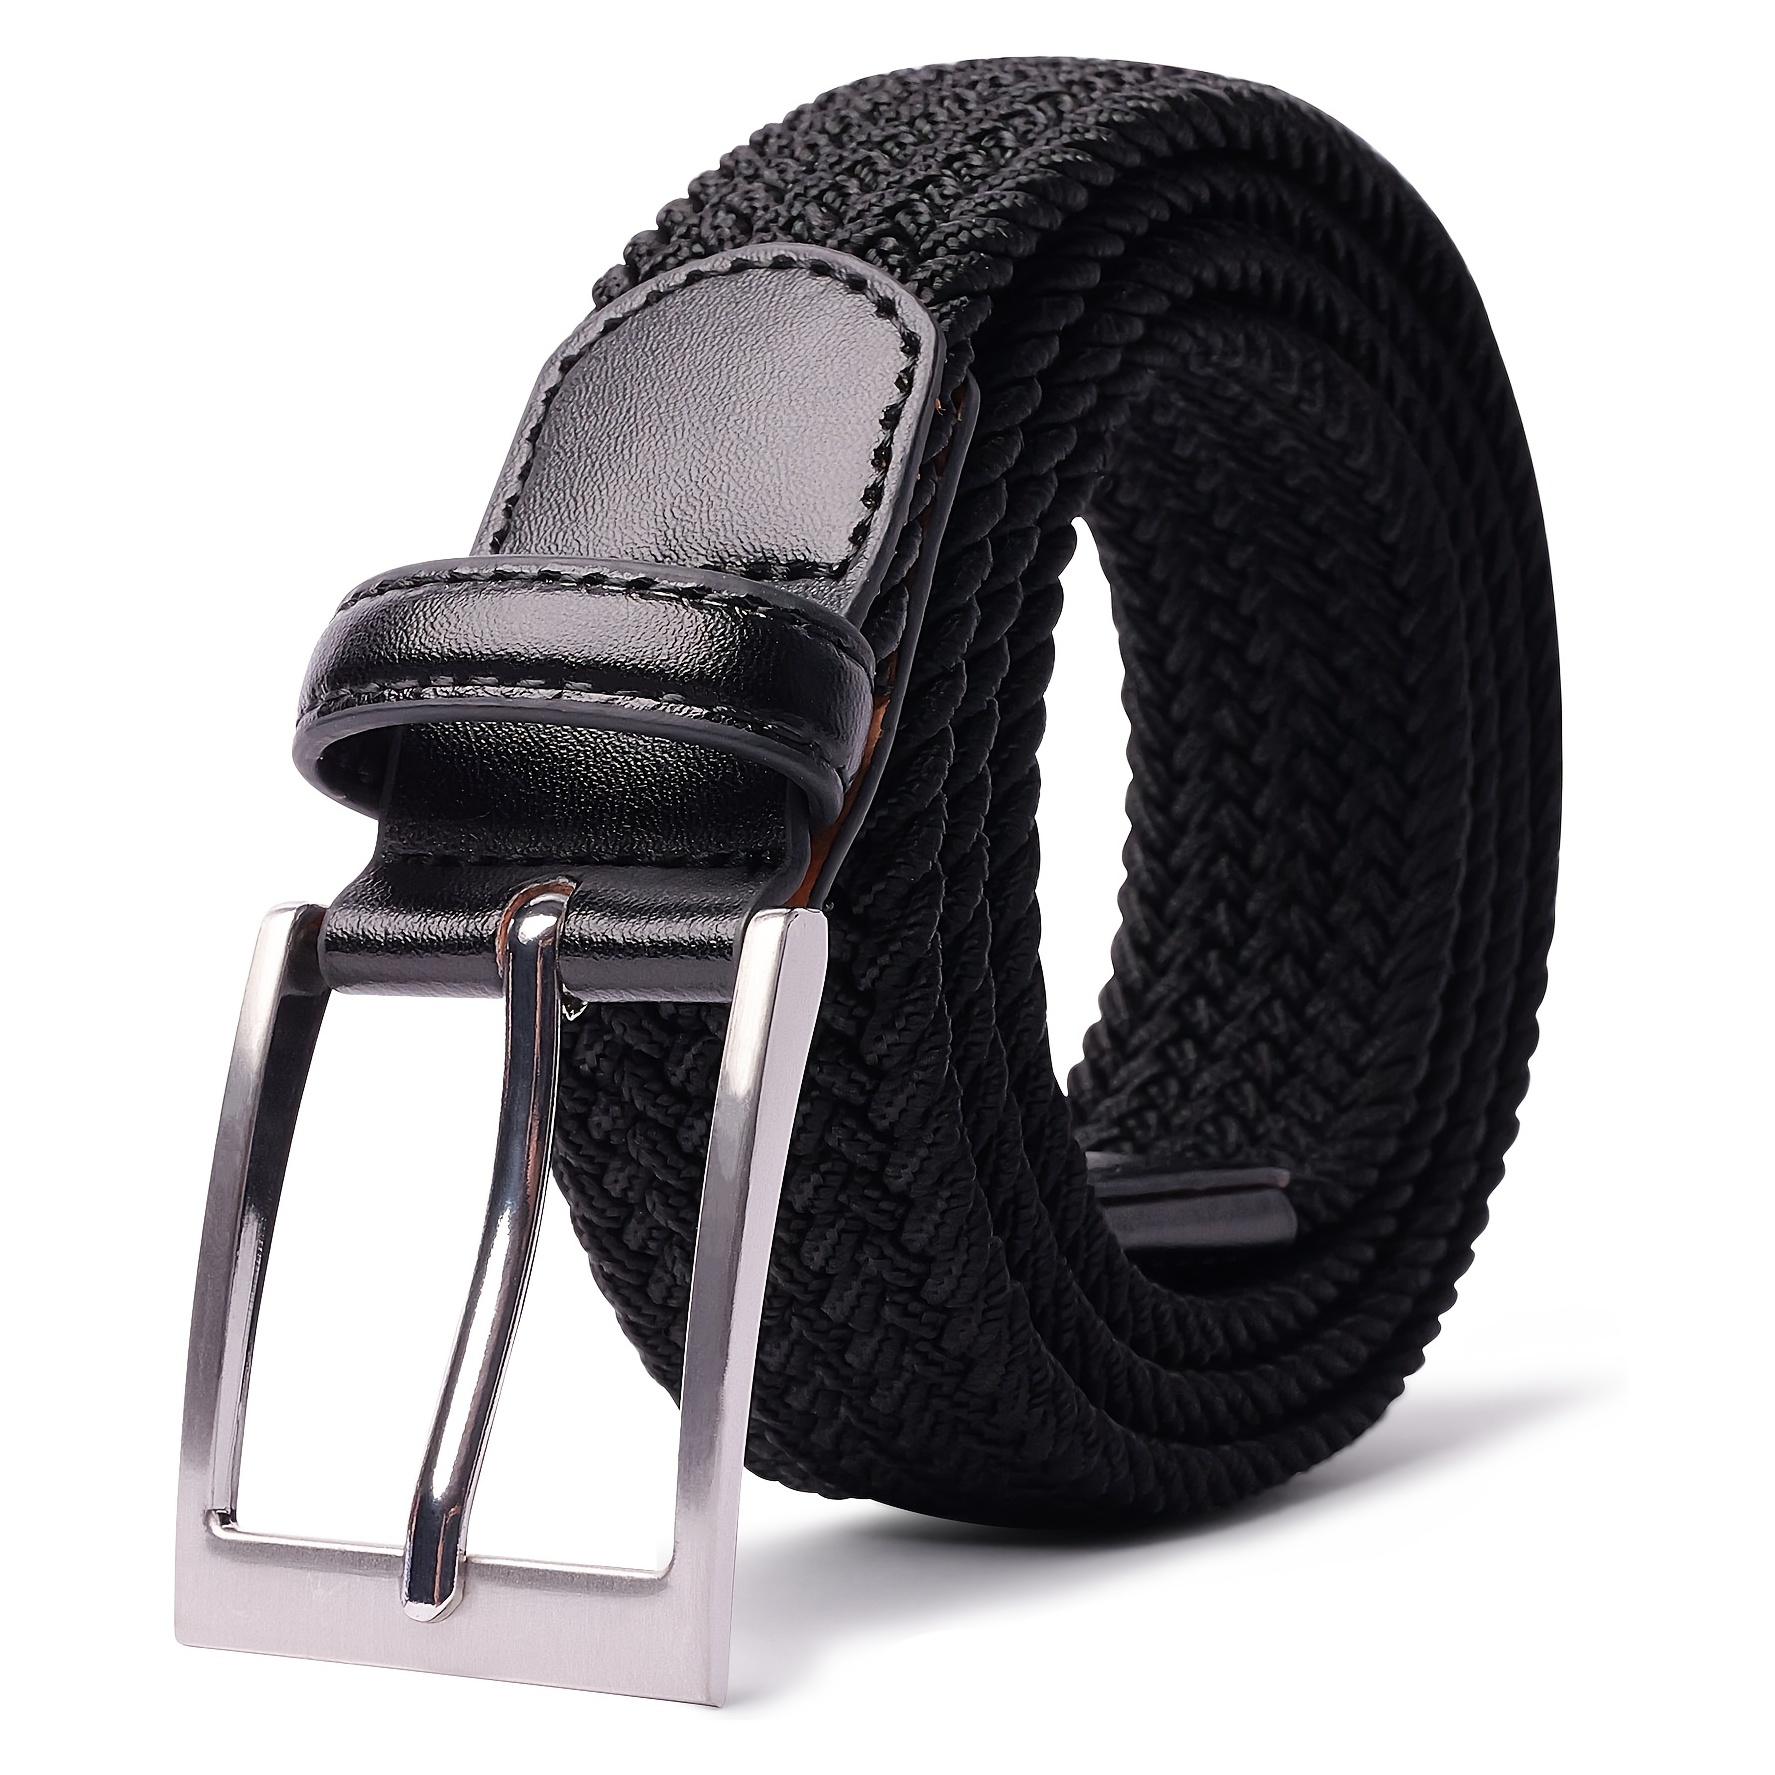 Maden TSS2107088 Cinturón trenzado elástico sin agujeros Cinturón de  pantalones casuales de despegue rápido de un